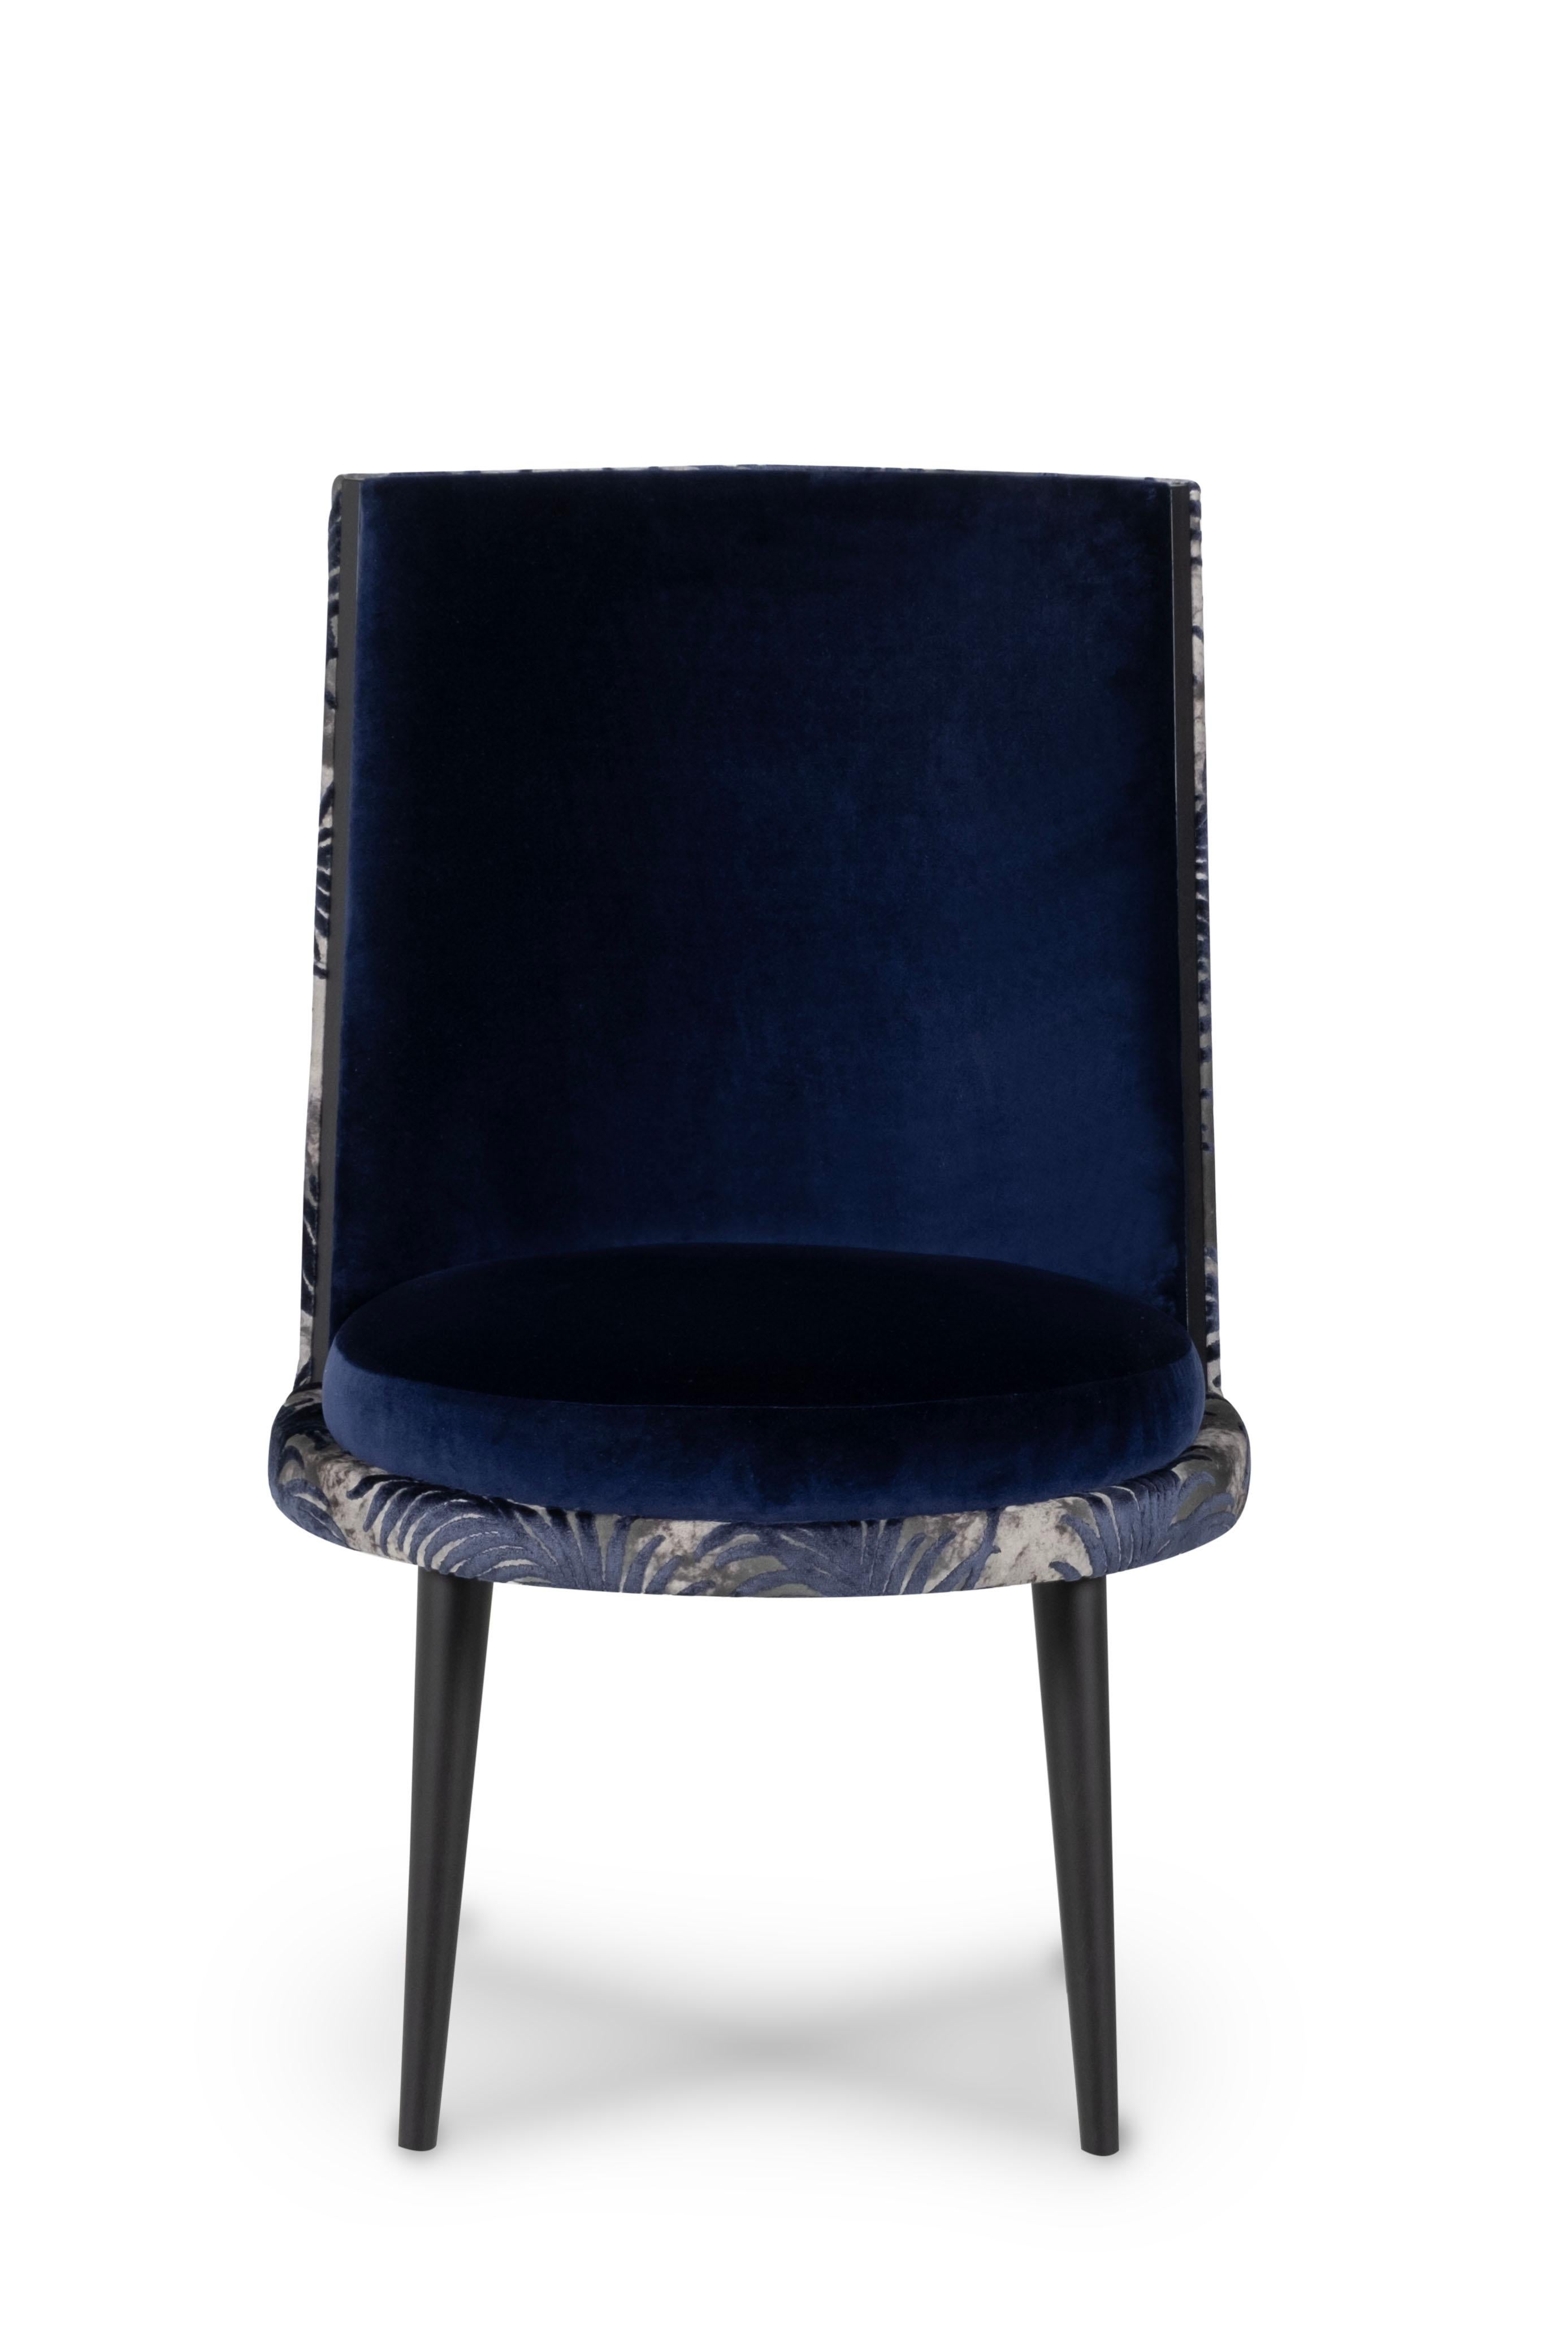 De Castro Stuhl, Modern Collection'S, handgefertigt in Portugal - Europa von GF Modern.

Der De Castro Esszimmerstuhl ist eine Hommage an eine der bemerkenswertesten portugiesischen Liebesgeschichten und zelebriert die Gelassenheit und Zartheit von